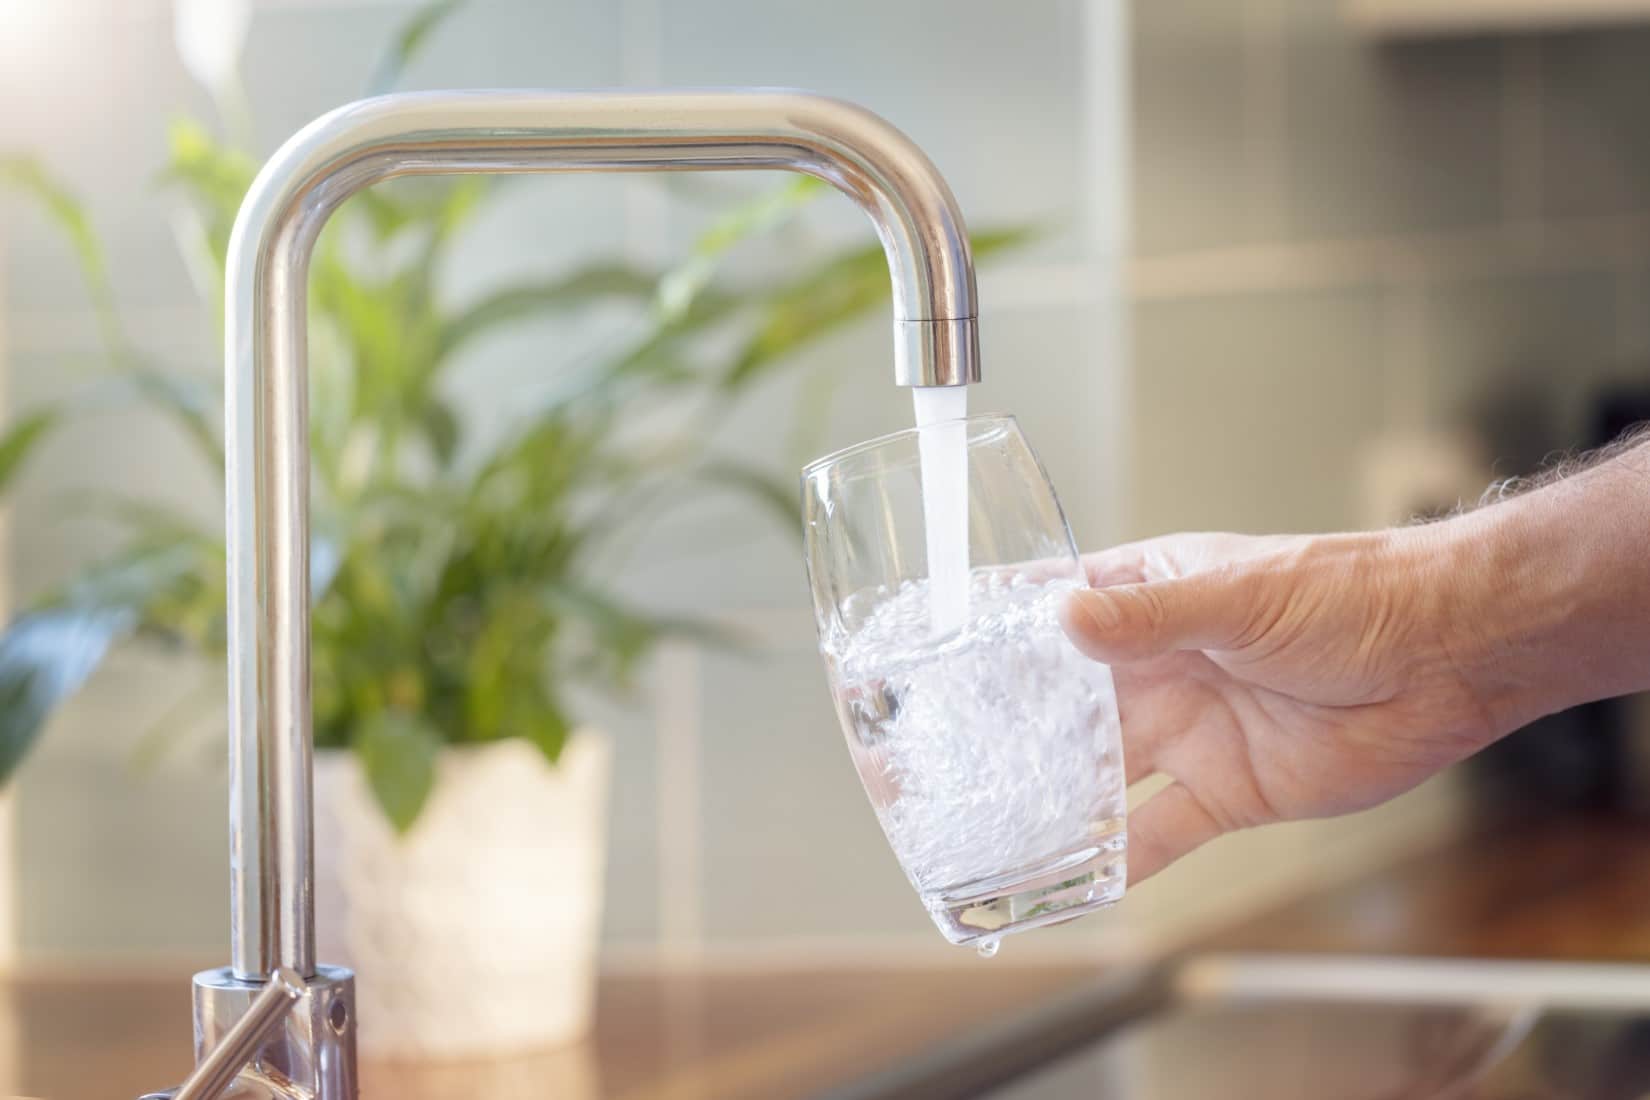 Wasserbehandlung im Haushalt: Wasserfilter und -filteranlagen sind aufgrund  der Trinkwasserqualität nicht notwendig